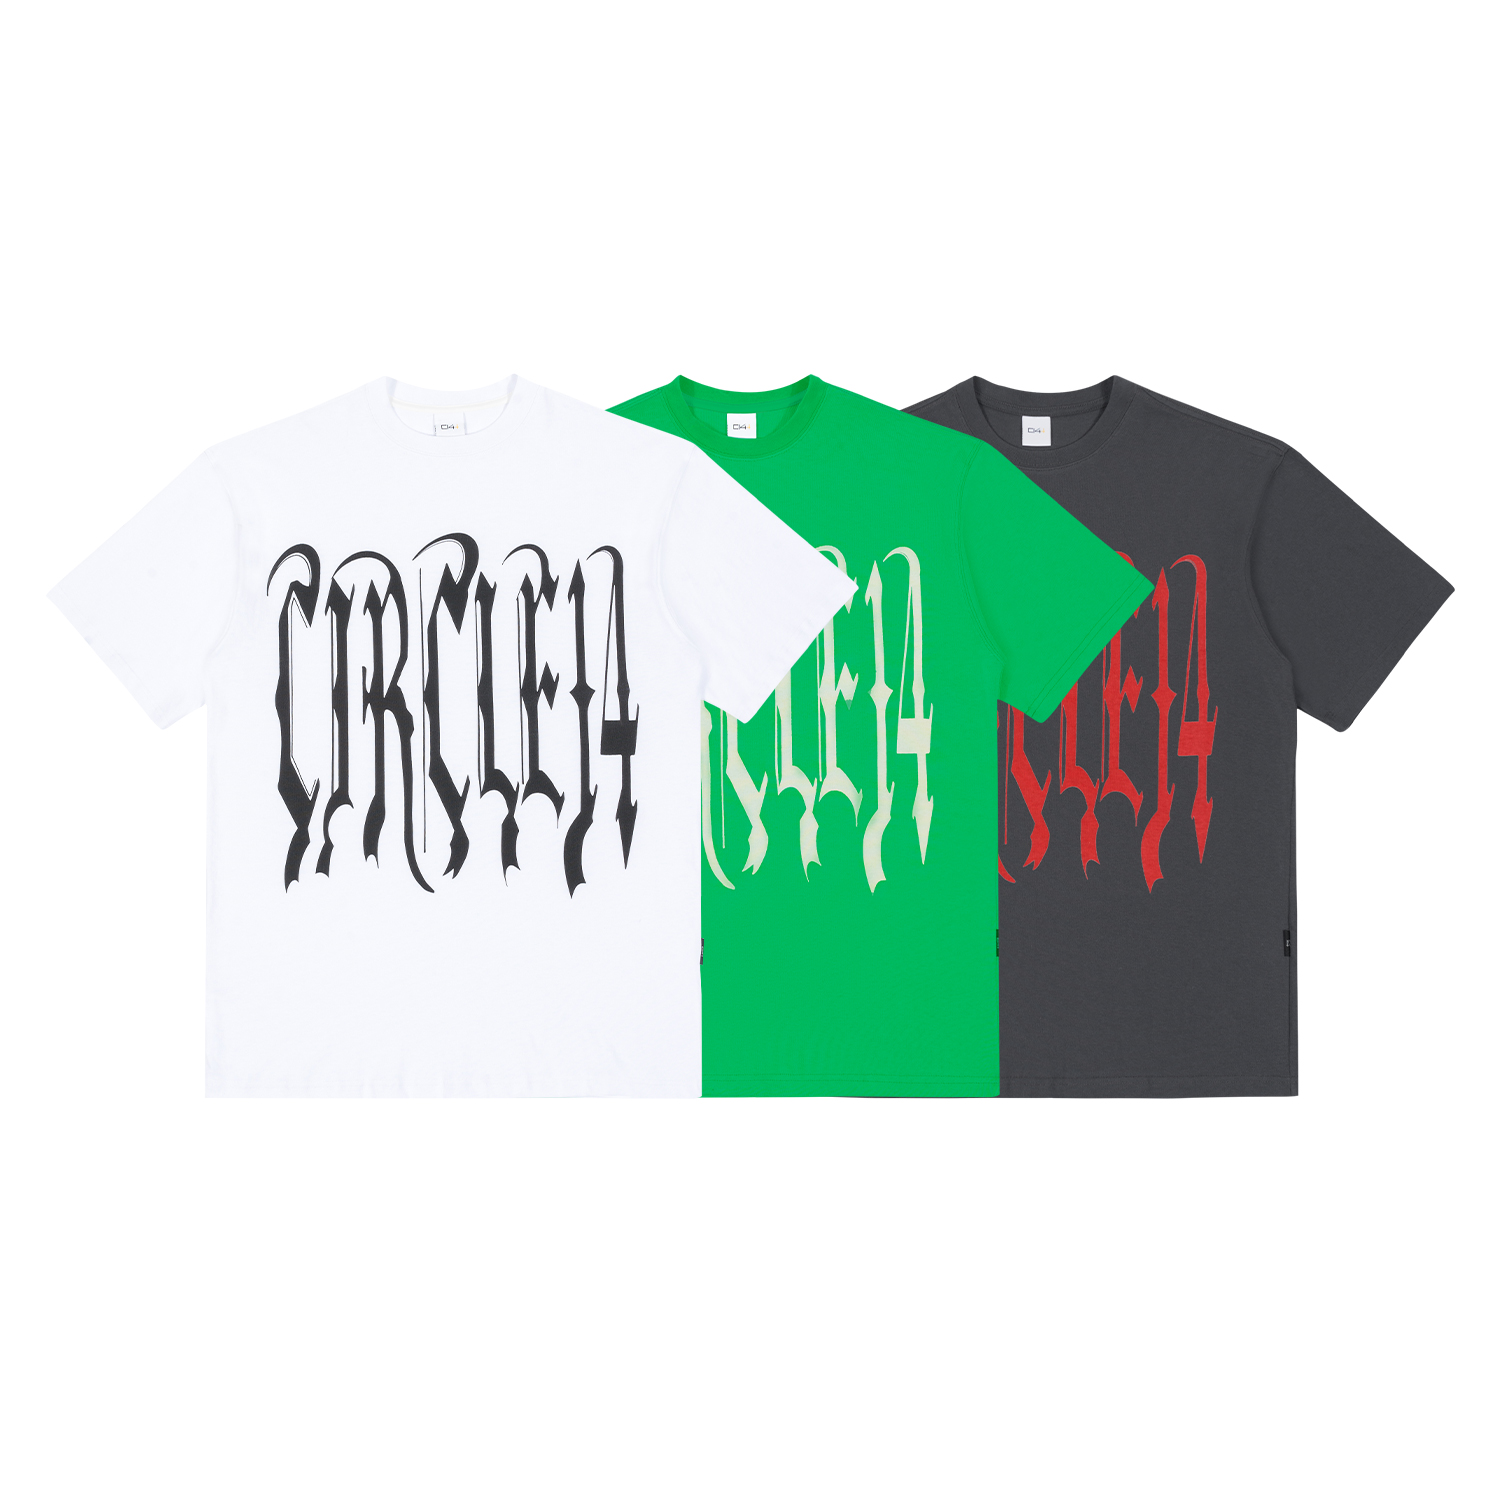 C14 online SS22 黑/白/灰/绿/橙 哥特字体印花宽松短袖T恤